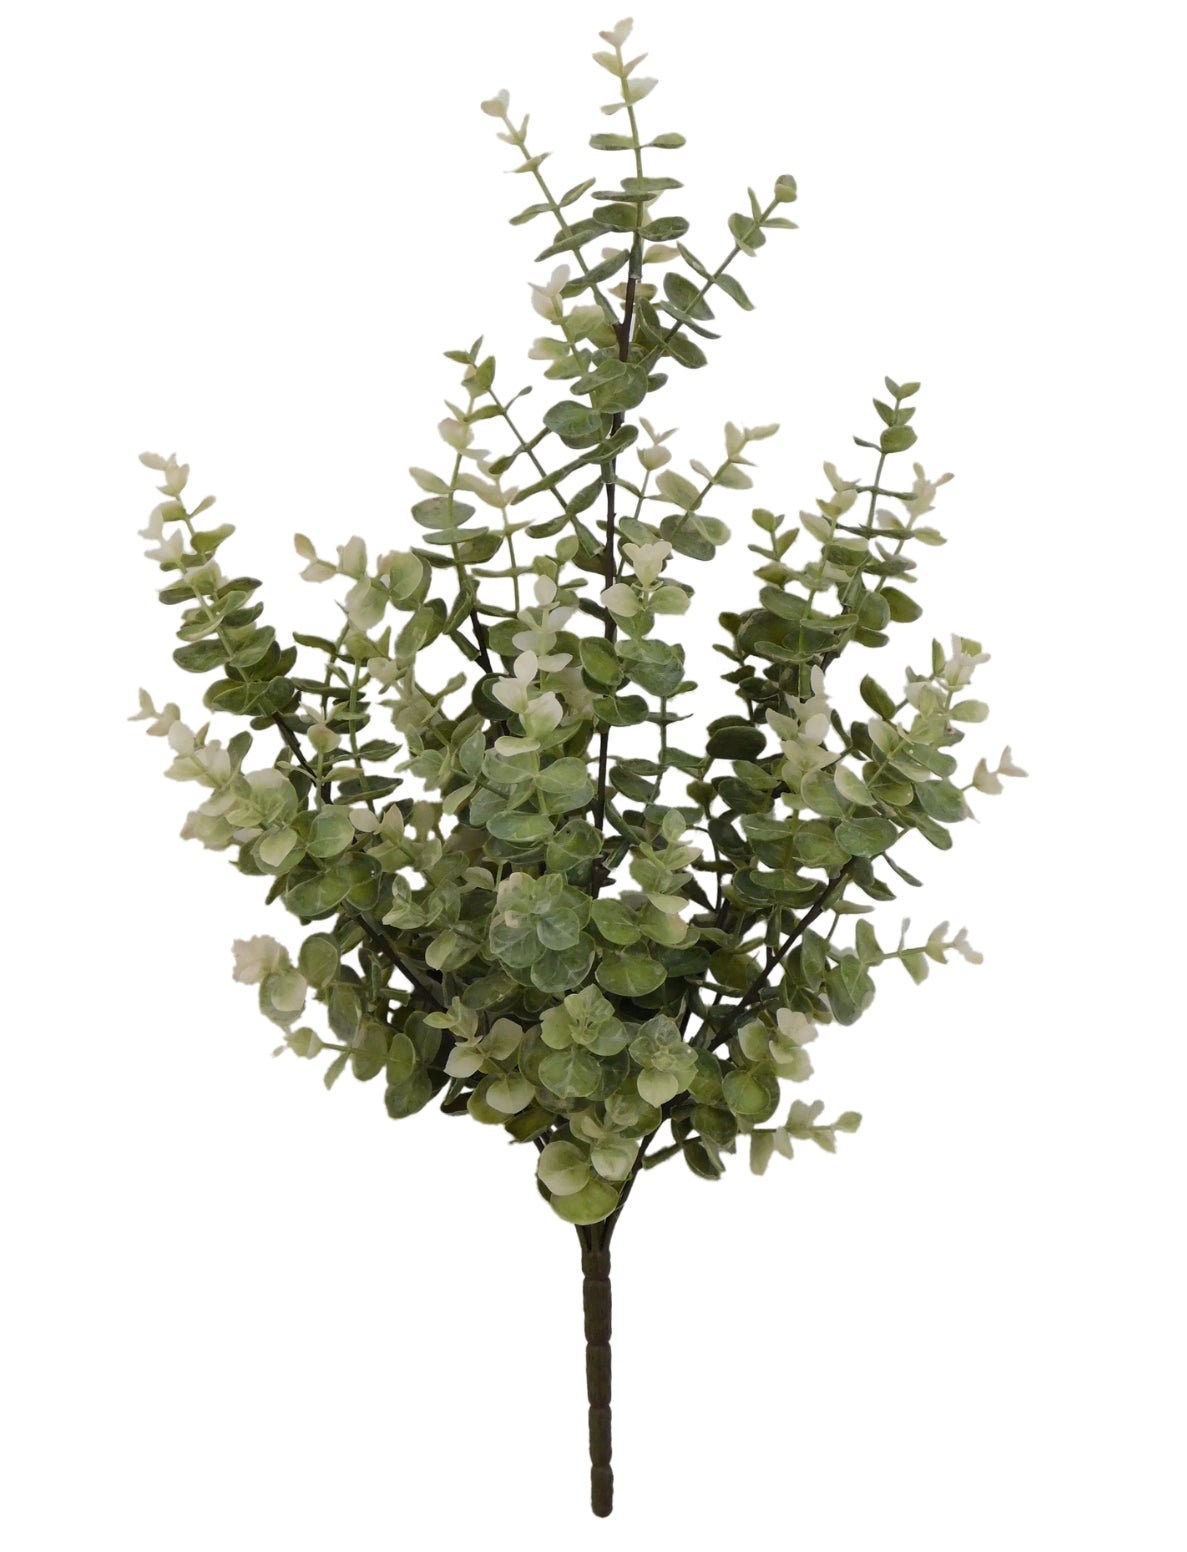 eucalyptus bush - cream / green tones - Greenery MarketArtificial Flora83190-GN